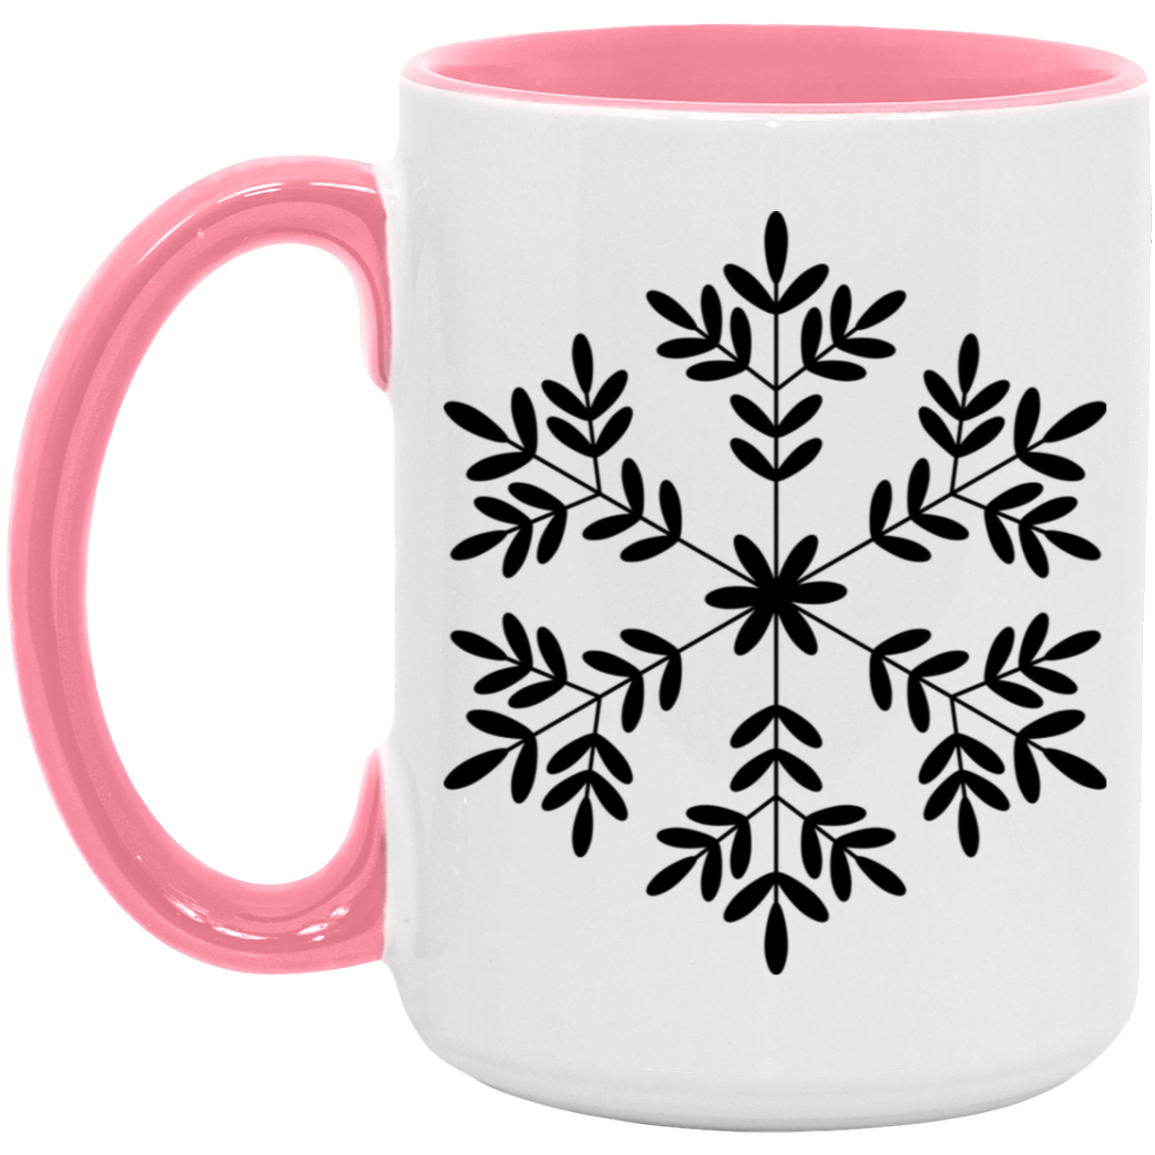 Snowflakes Winter 15 oz Coffee Mug